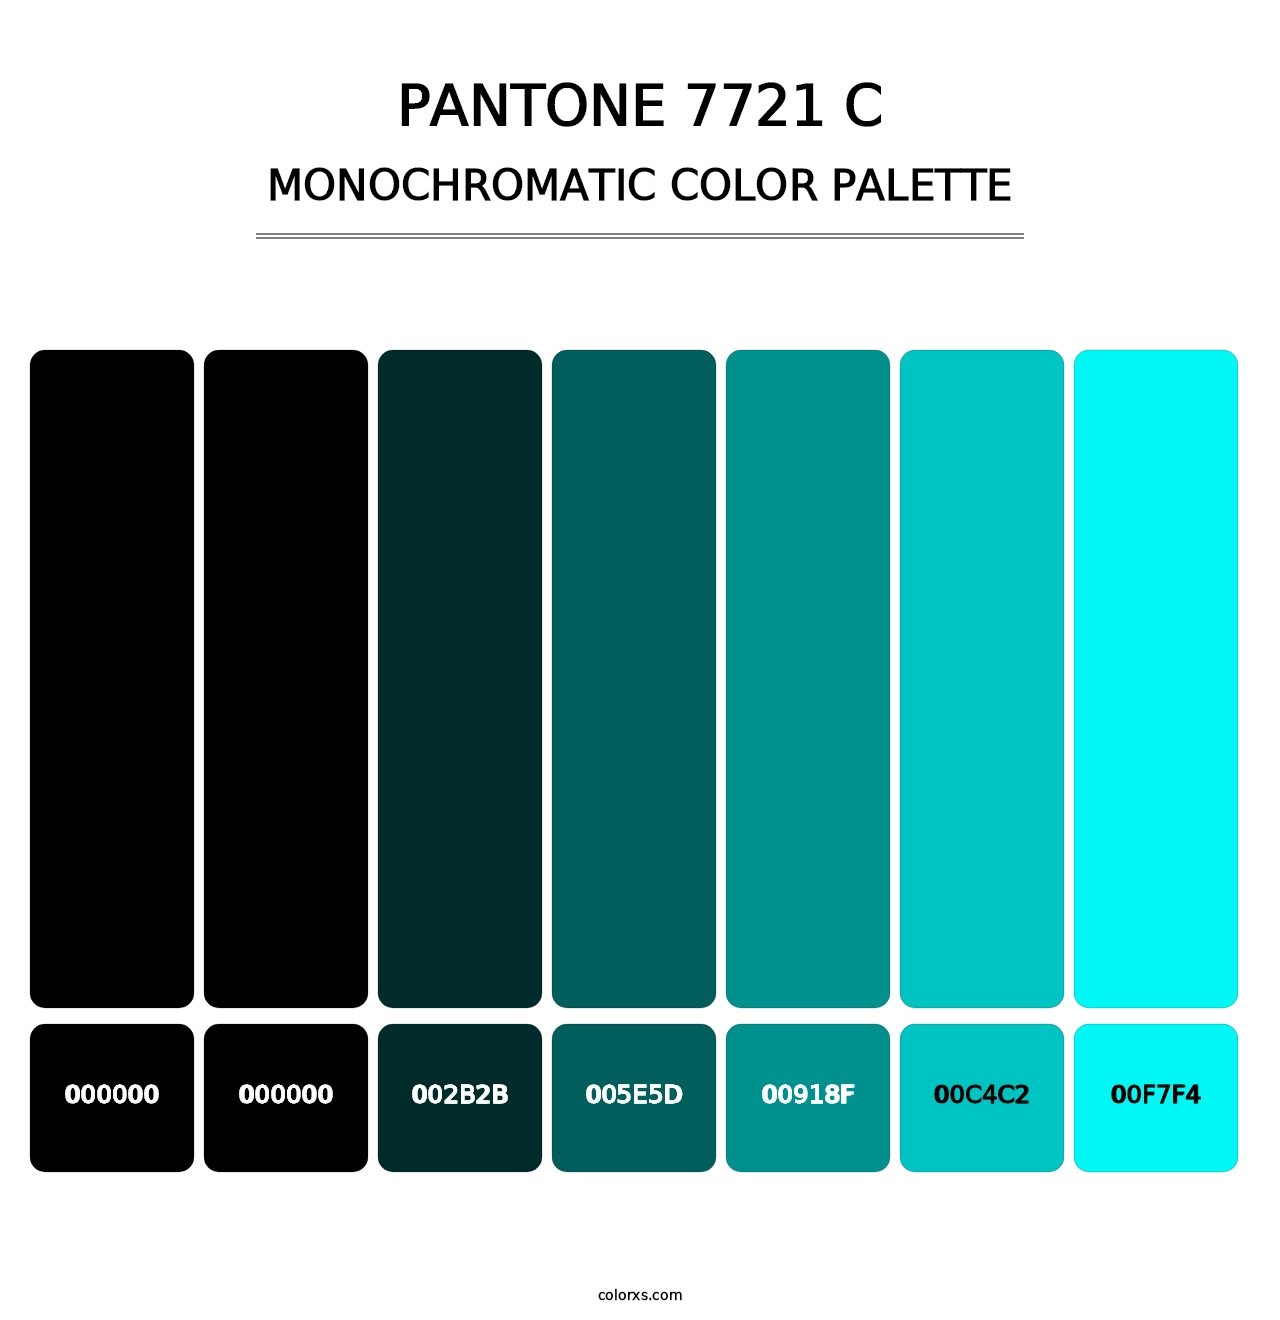 PANTONE 7721 C - Monochromatic Color Palette